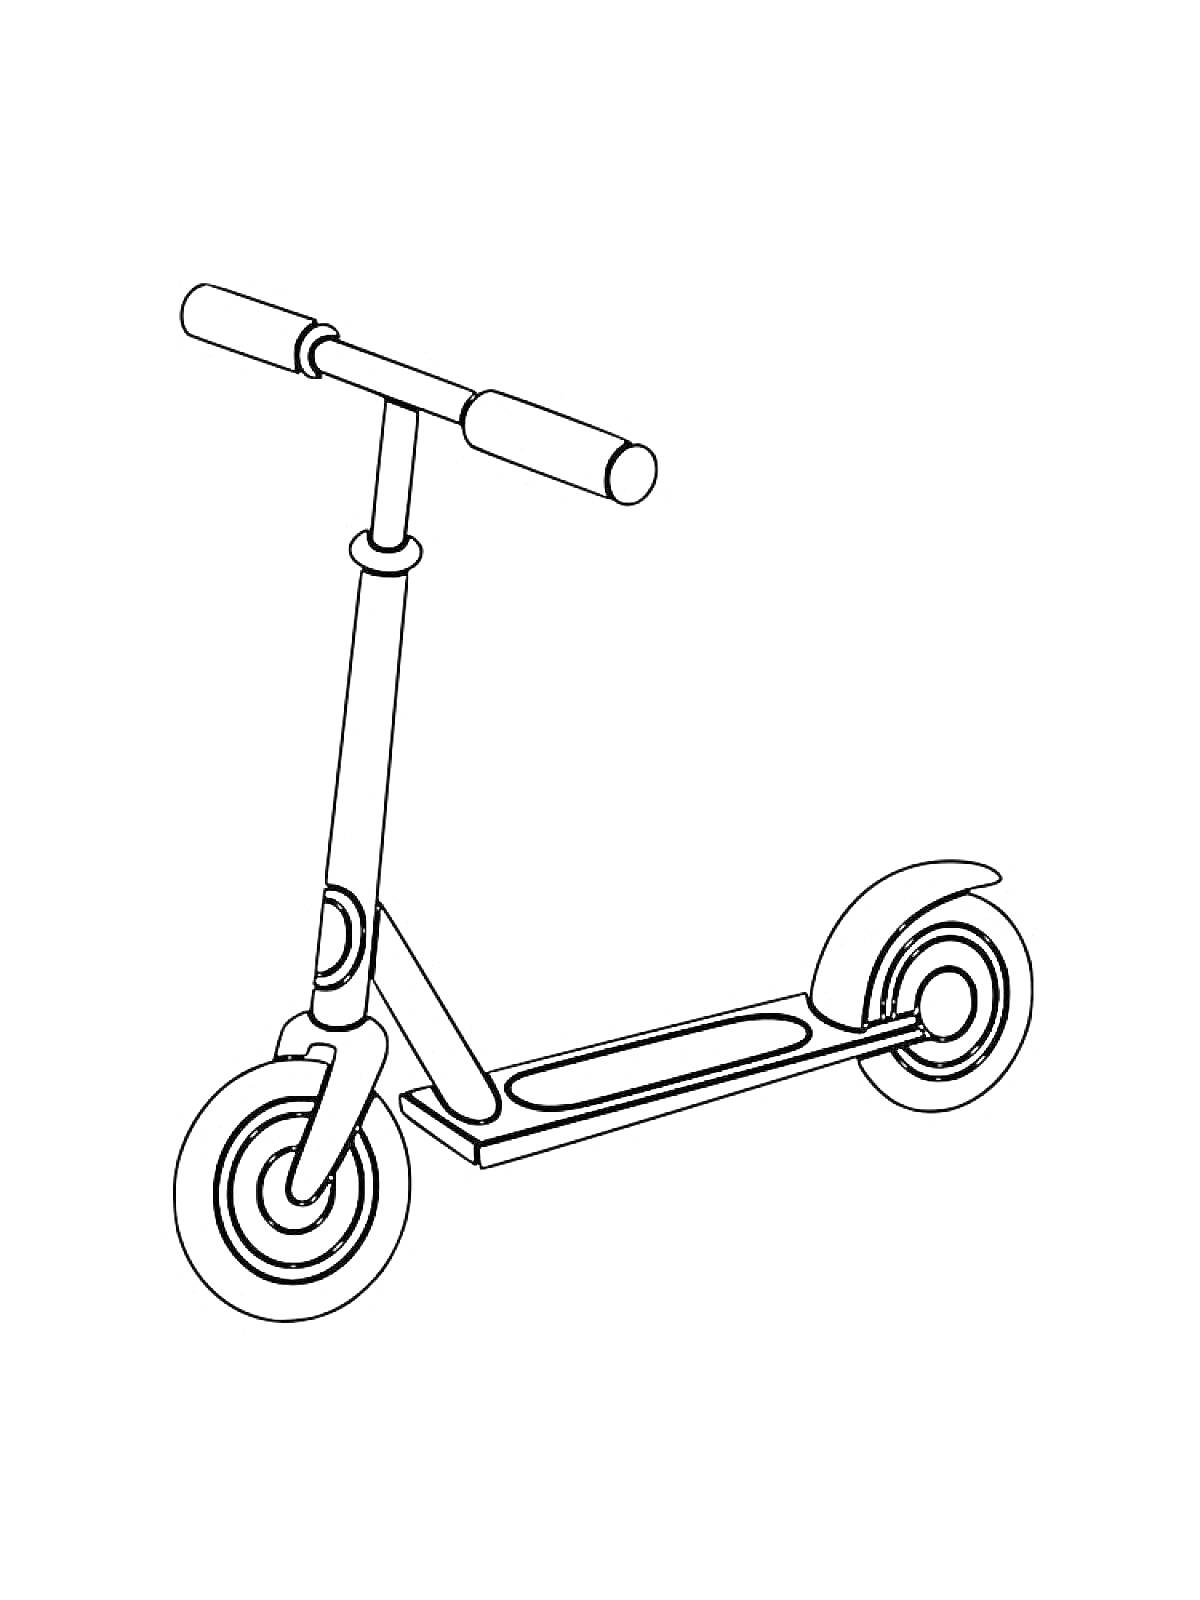 Раскраска Самокат с двумя колесами, рулем и платформой для ног